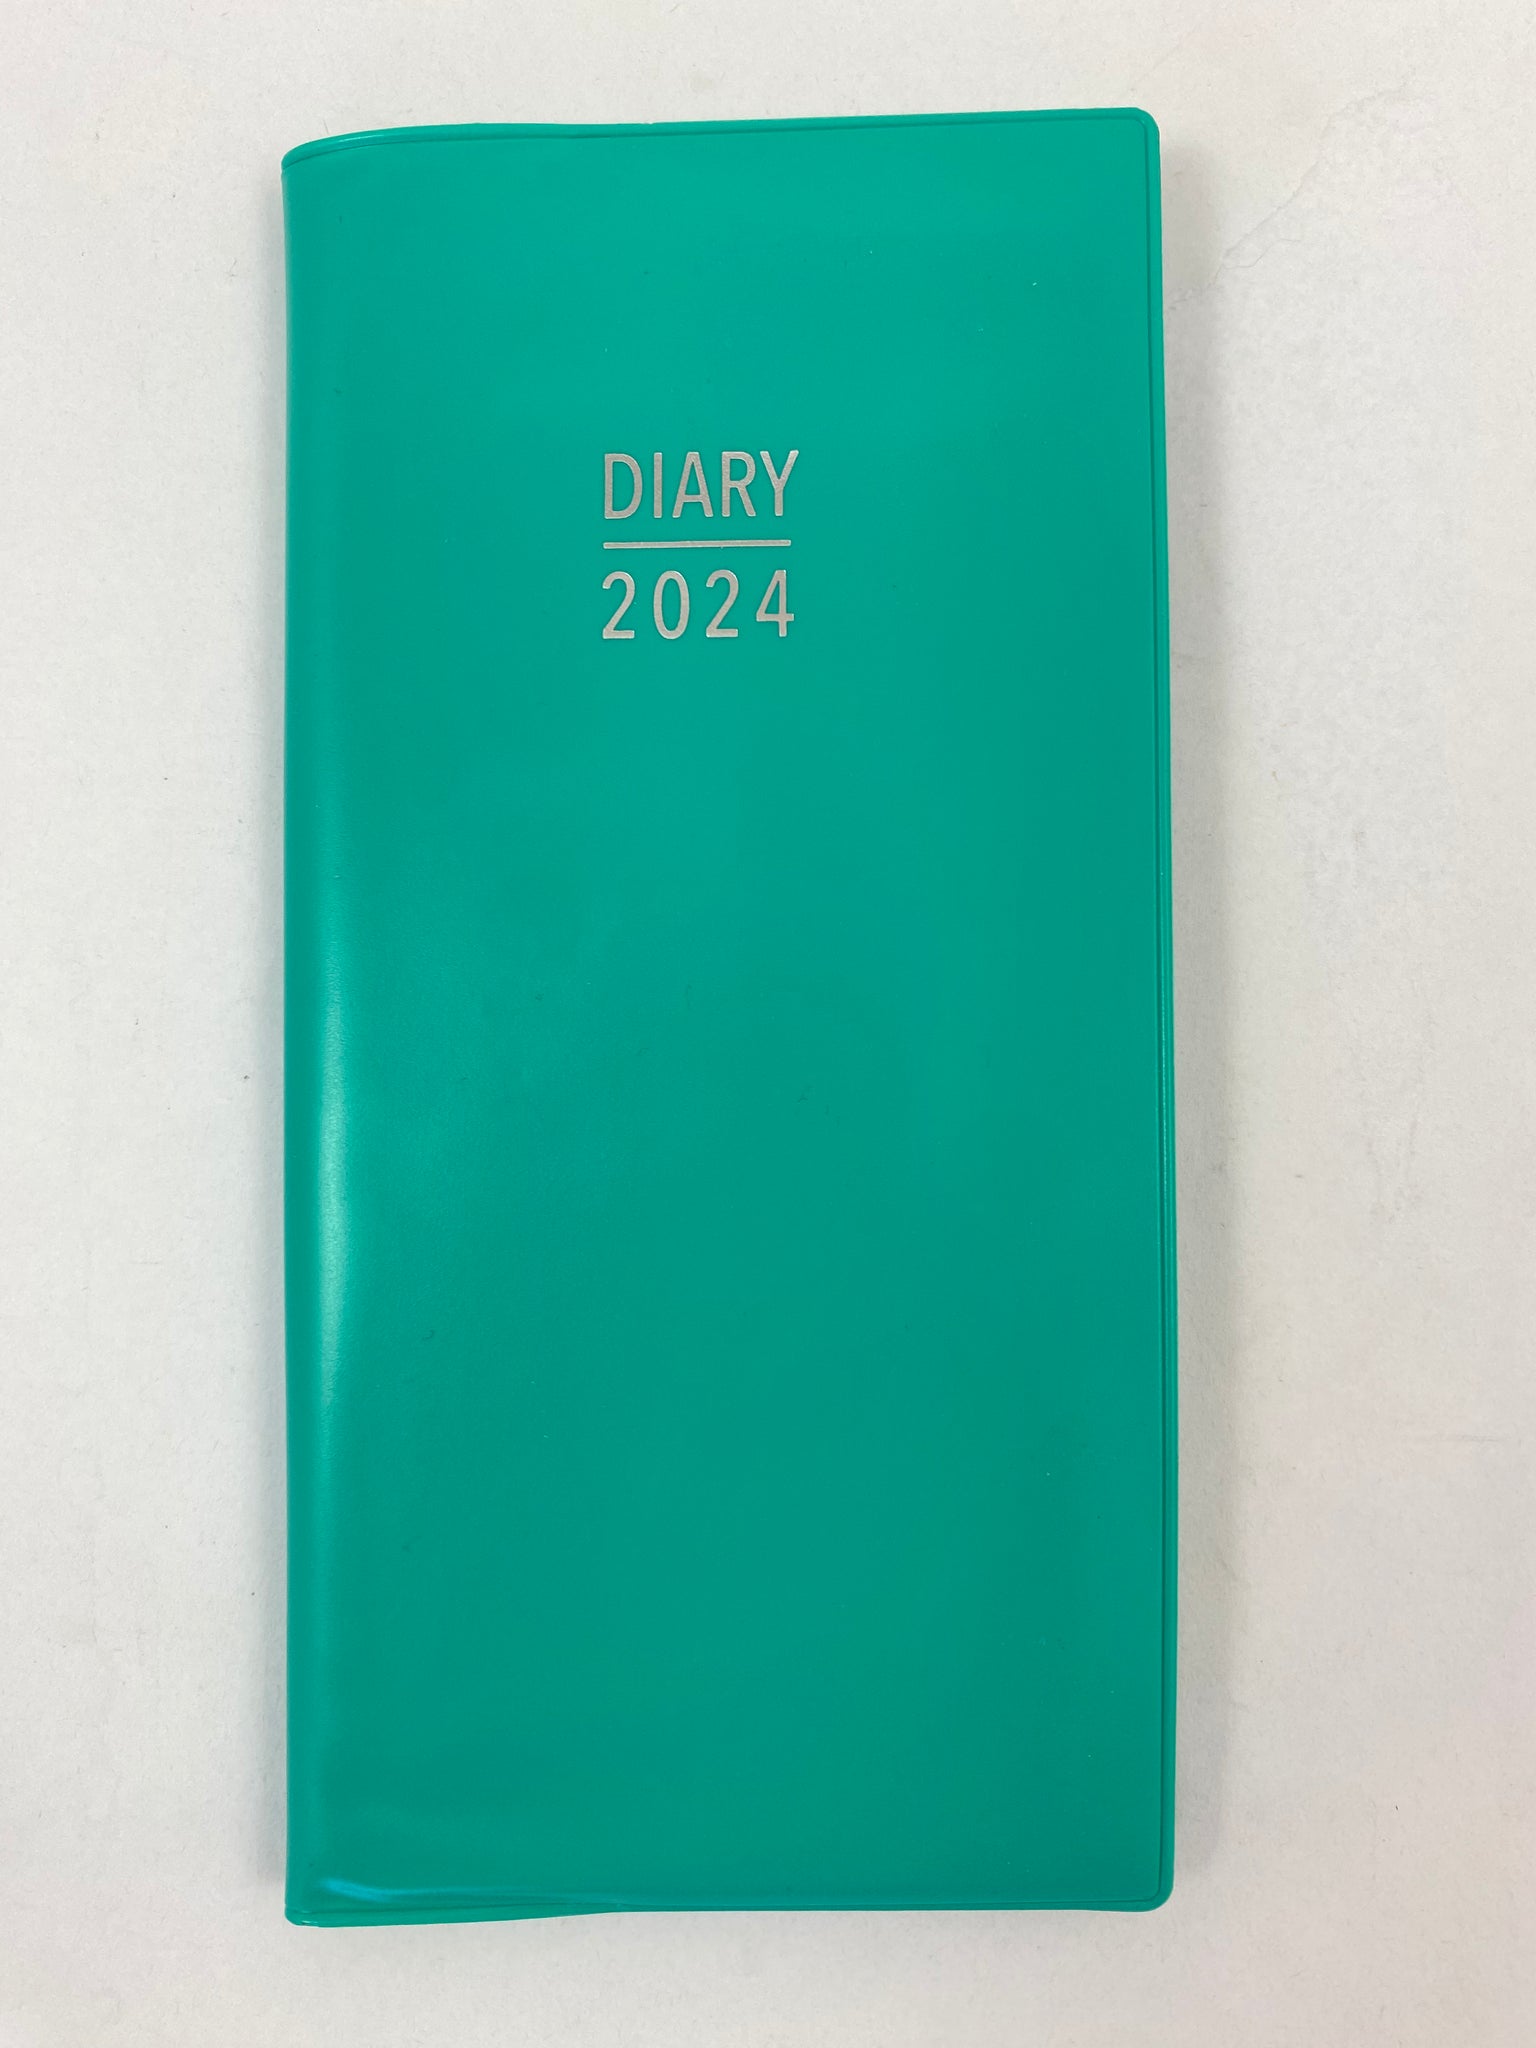 2024 Pocket Diary - Segreen